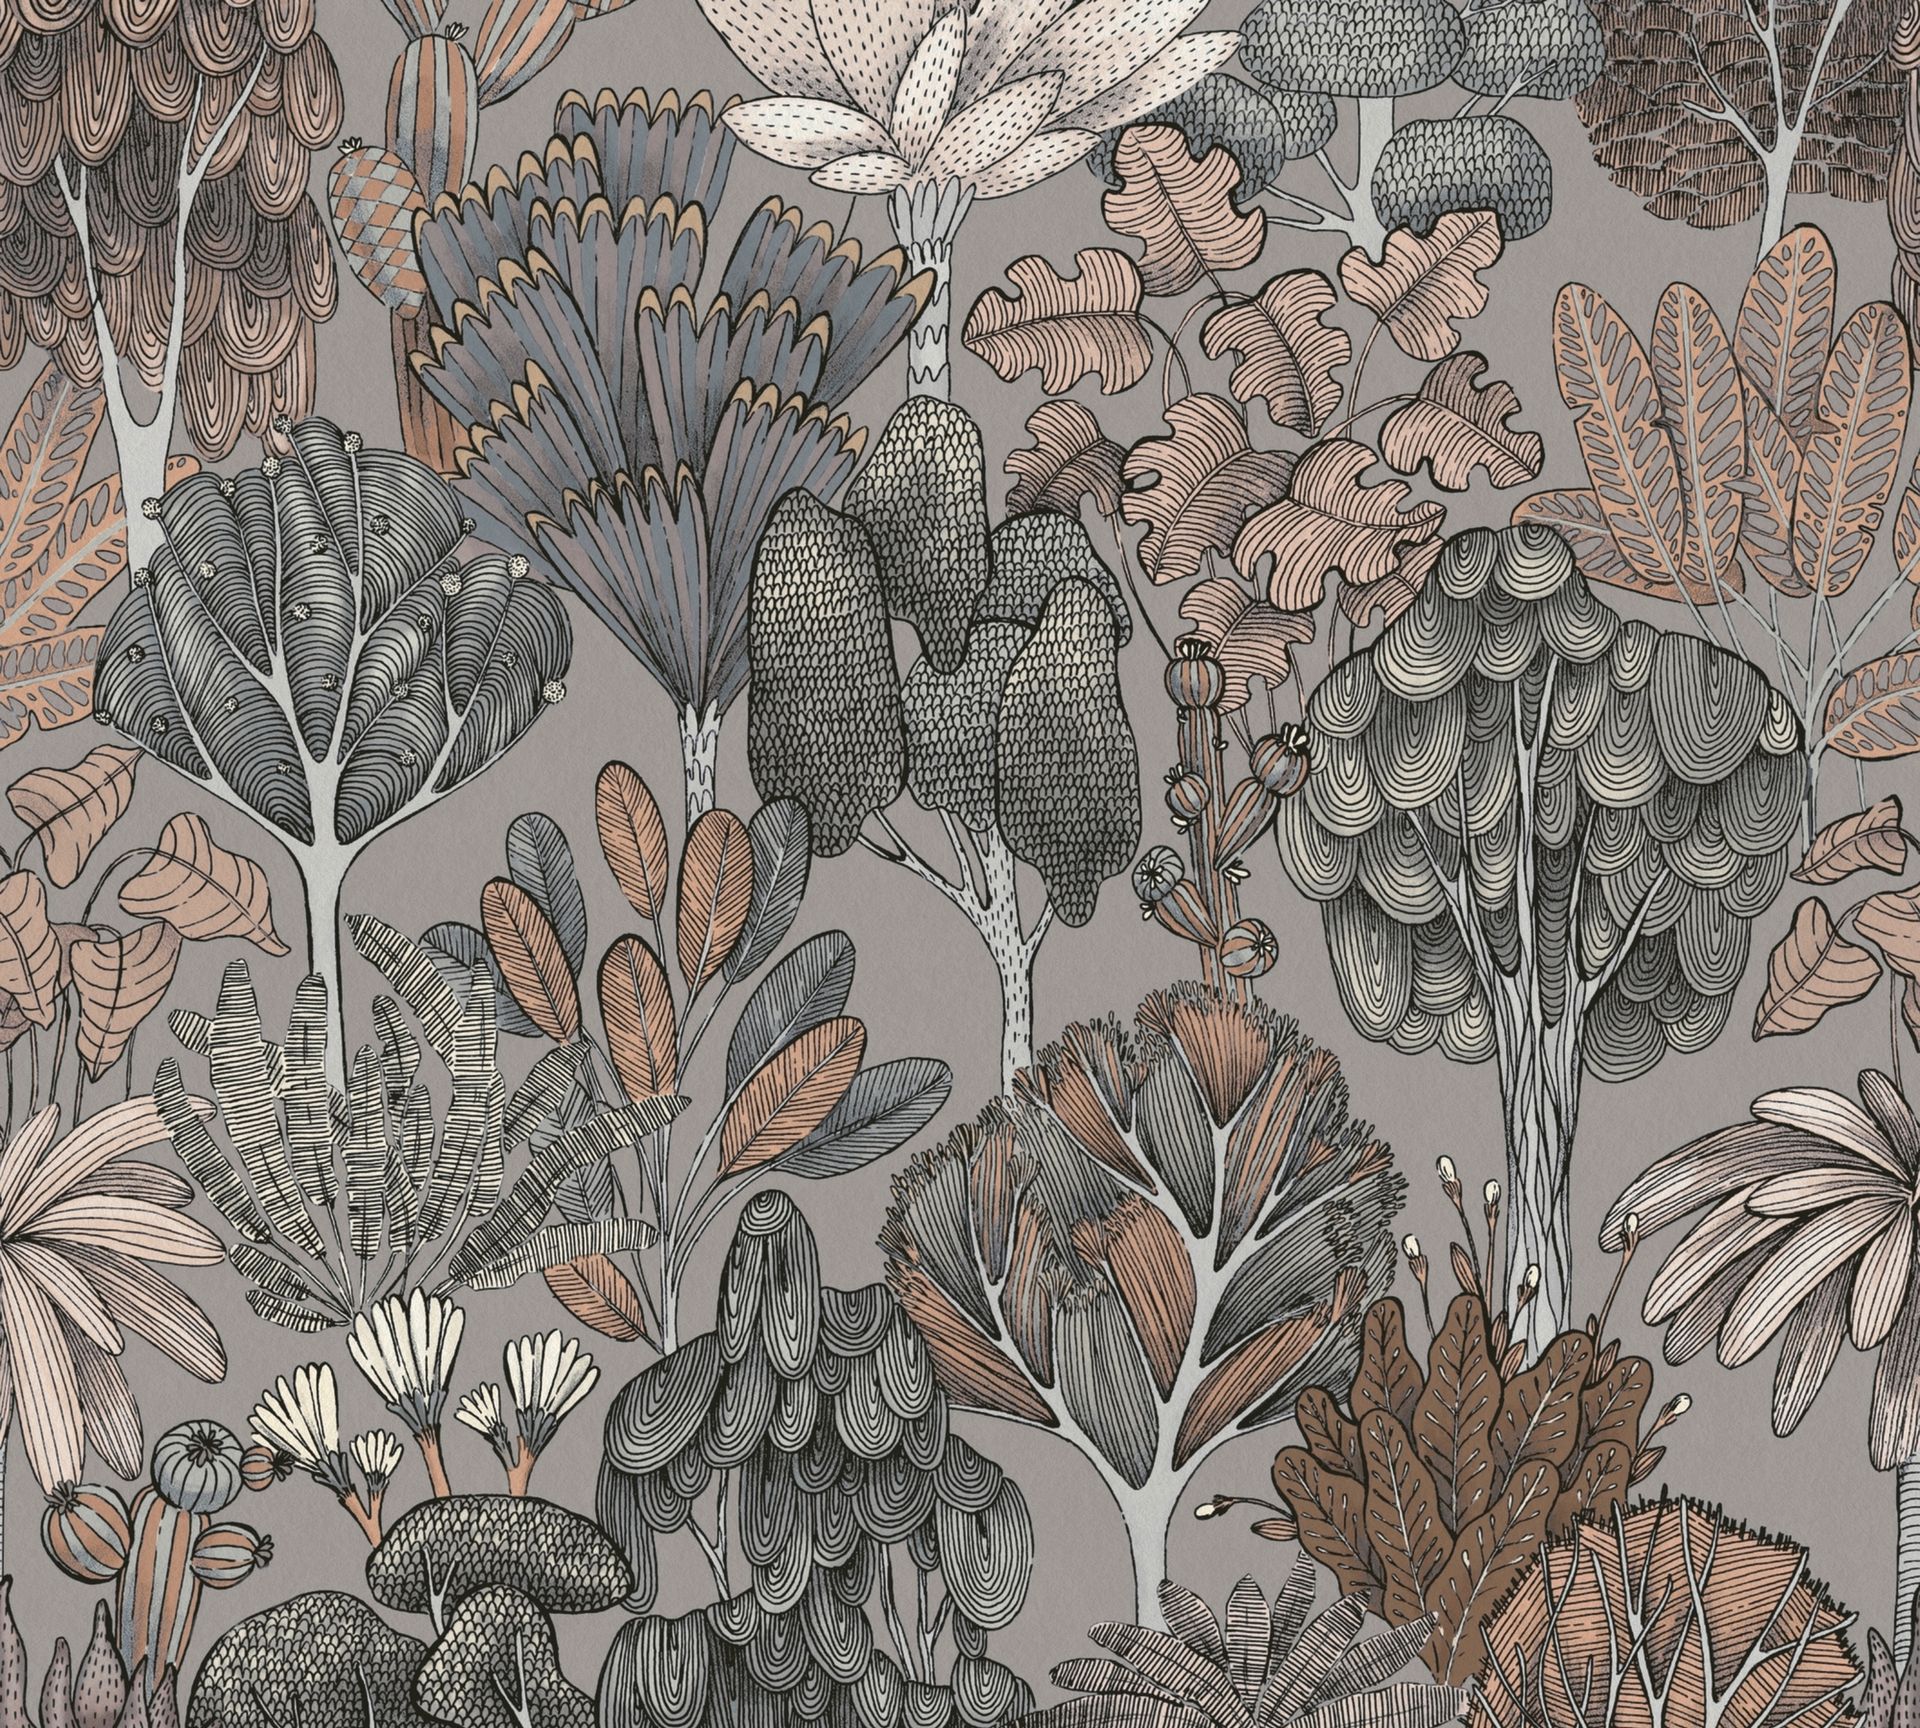 Architects Paper Floral Impression, Dschungeltapete, grau, beige 377574